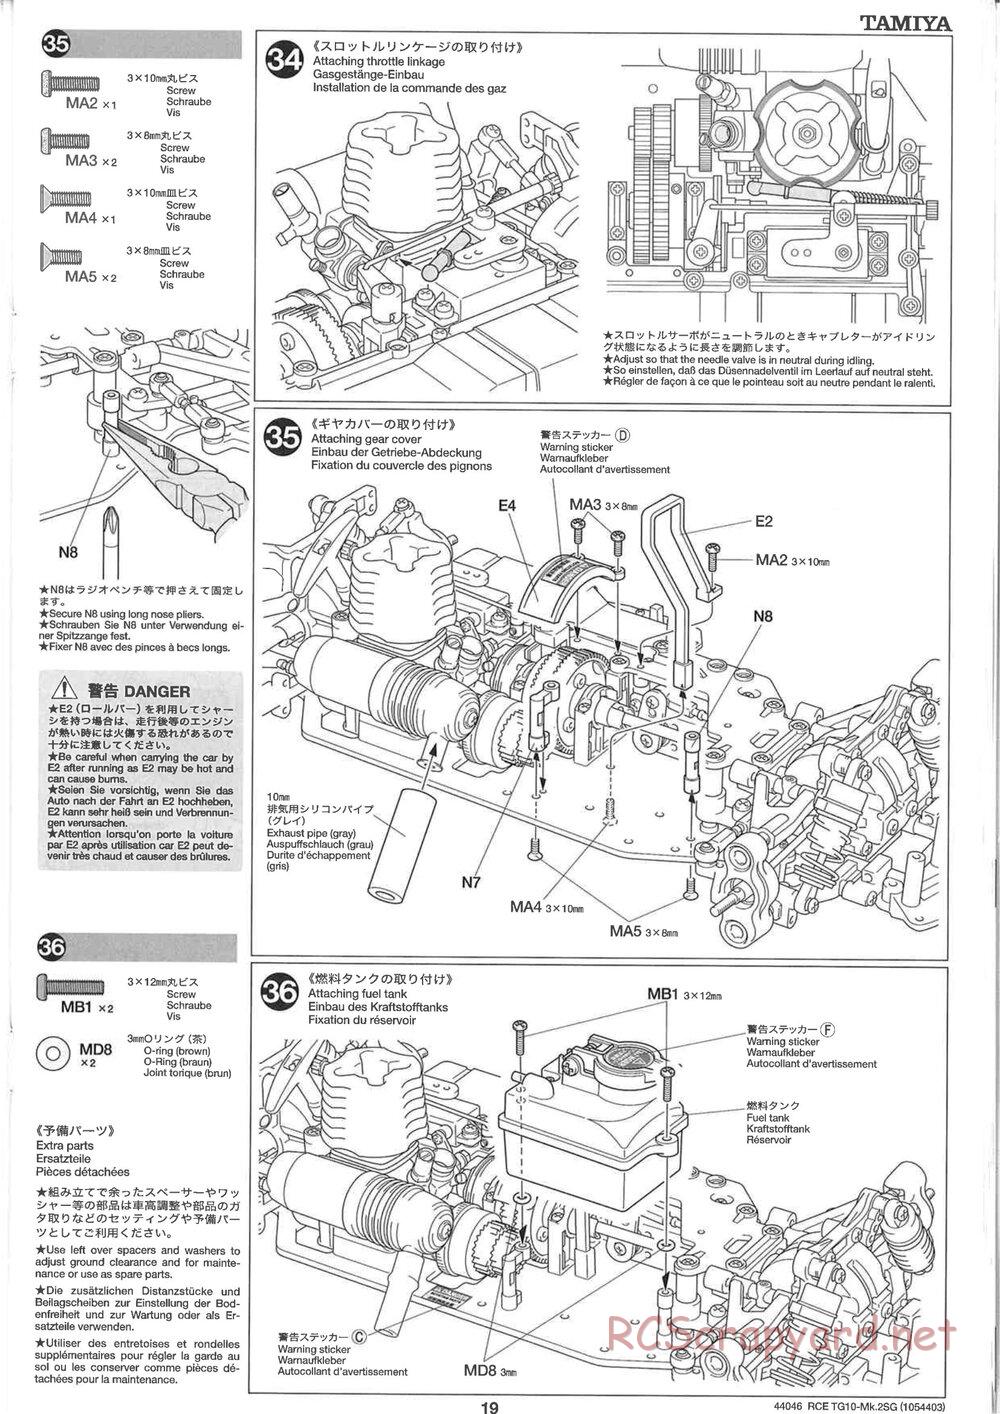 Tamiya - TG10 Mk.2SG Chassis - Manual - Page 19